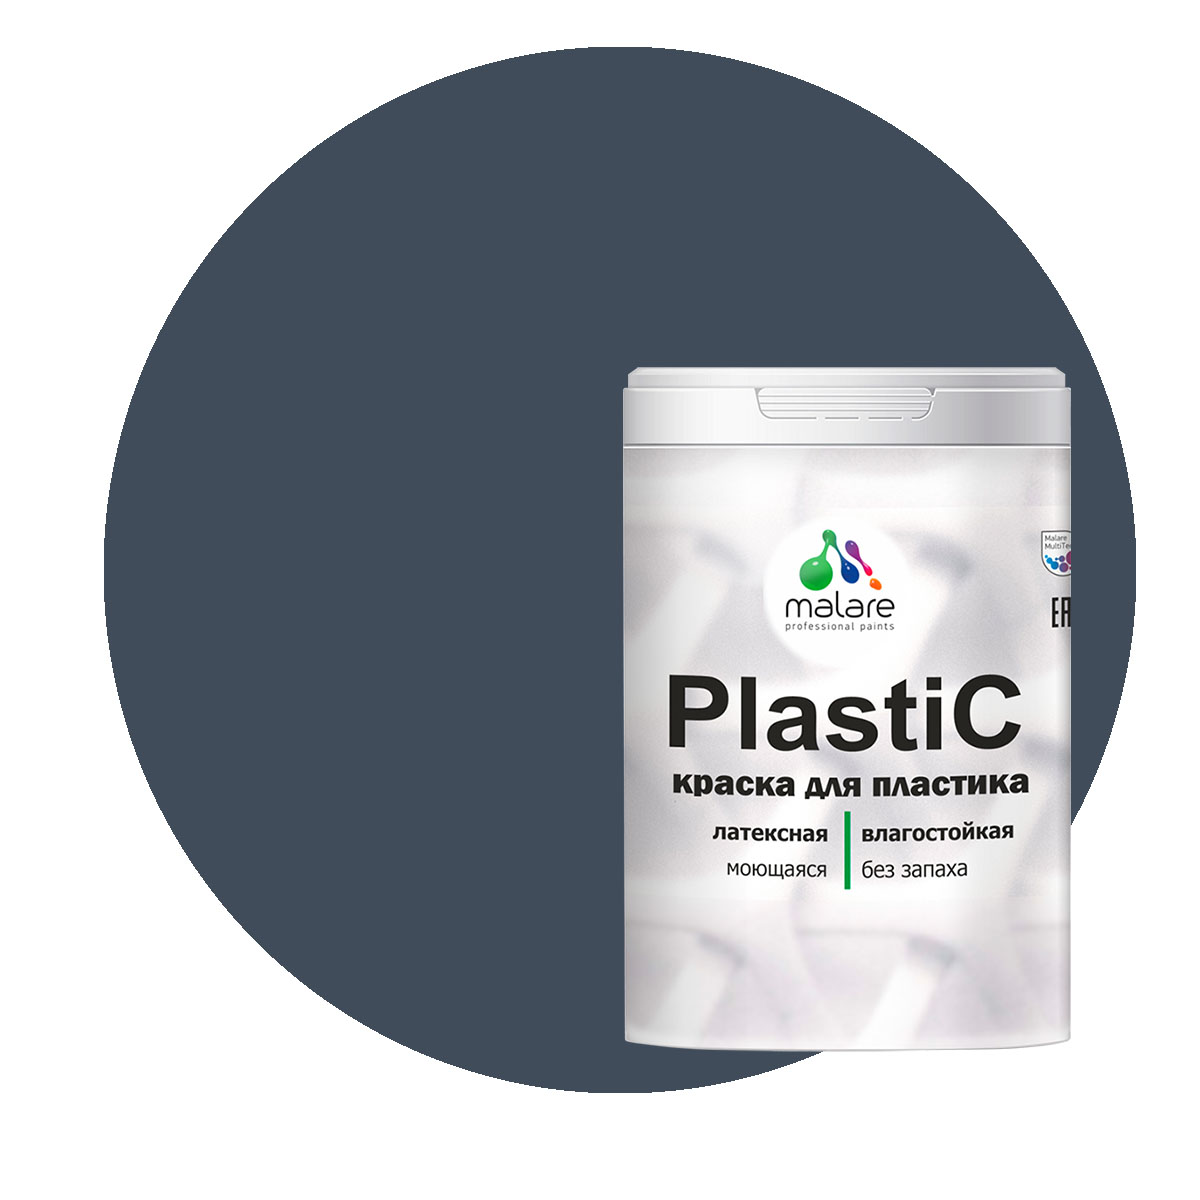 Краска Malare PlastiC для пластика, ПВХ, для сайдинга, гранитный, 1 кг. краска malare plastic для пластика пвх для сайдинга гранитный 2 кг